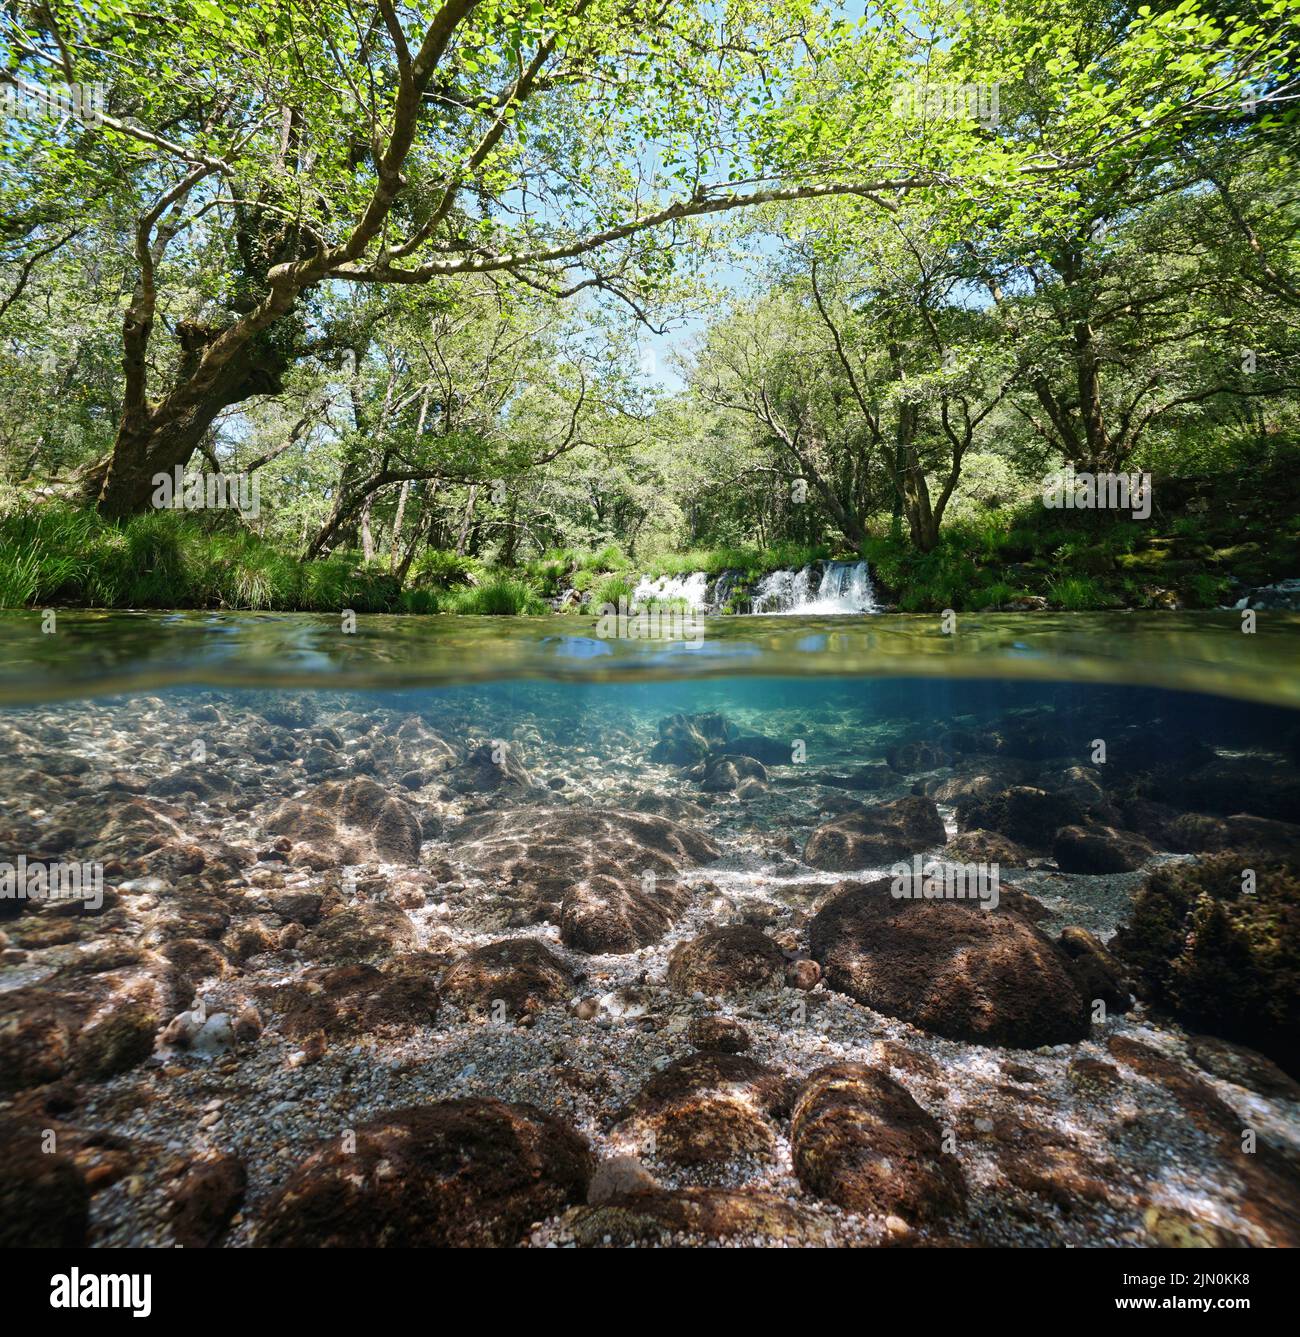 Paisaje fluvial sobre y bajo la superficie del agua, pequeña cascada y árboles follaje, vista a dos niveles , España, Galicia, Río Verdugo Foto de stock